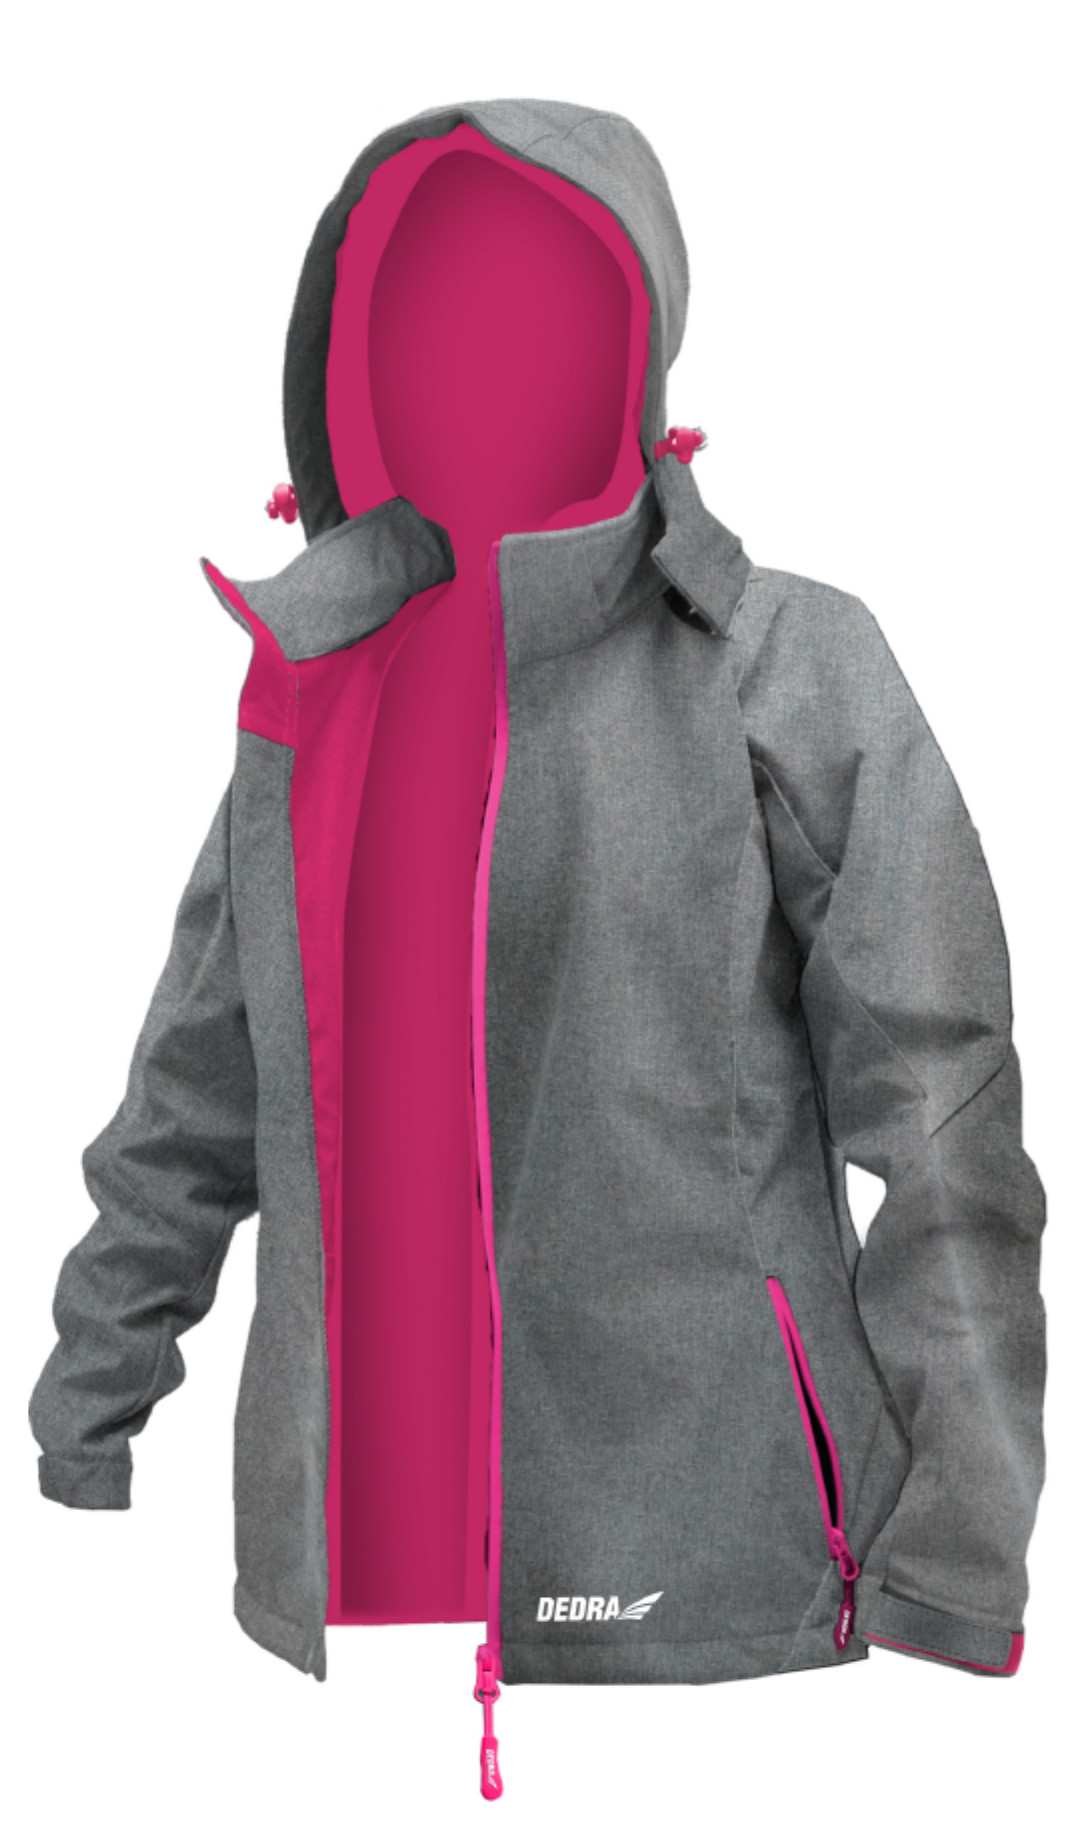 Dámská softshellová bunda, vel.L, 96%polyester+4%elasta DEDRA BH65KS-L + Dárek, servis bez starostí v hodnotě 300Kč